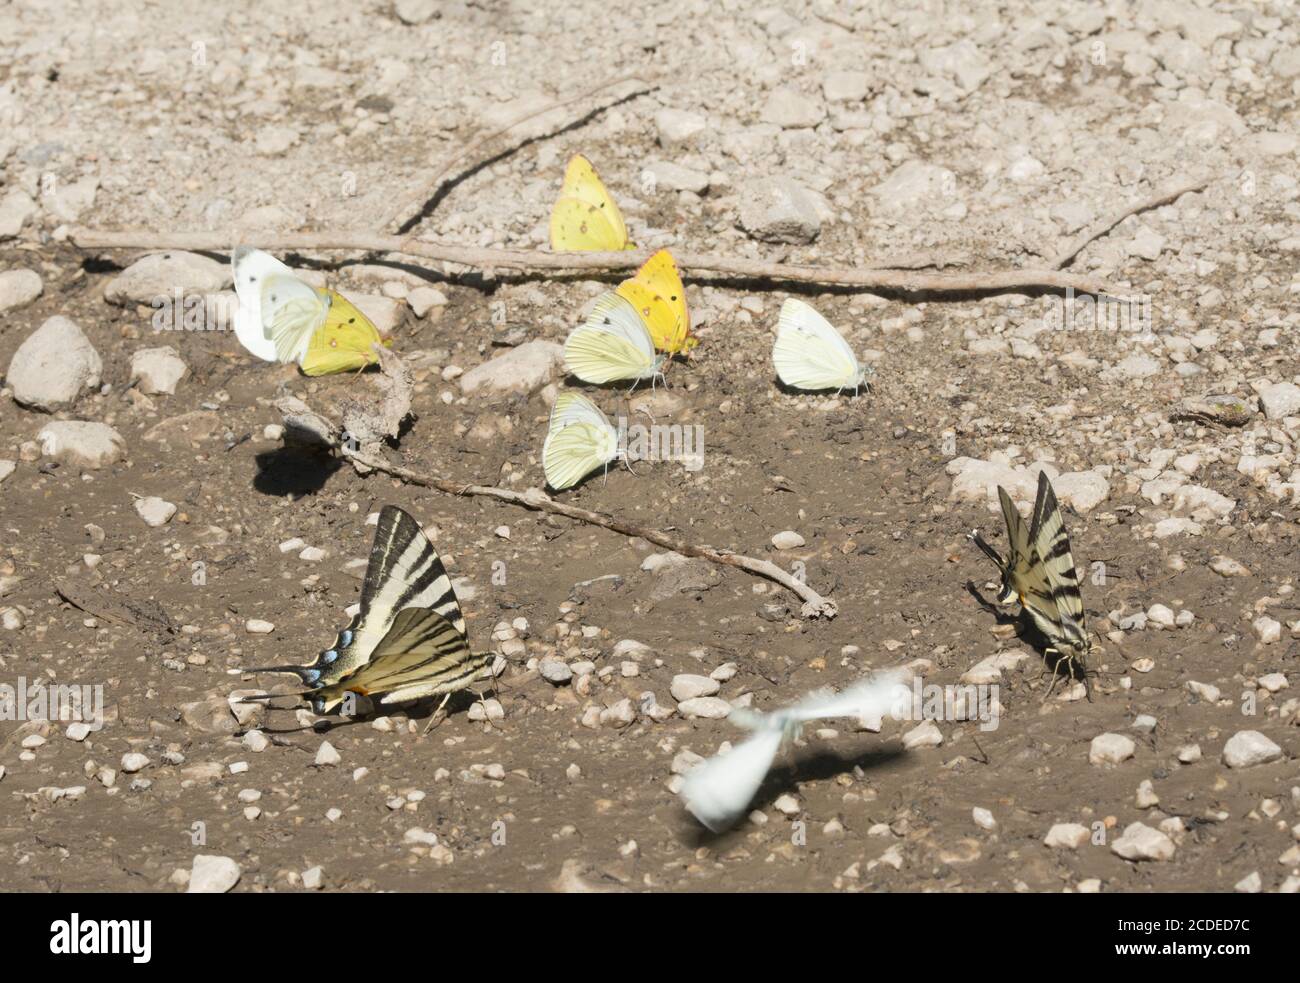 Verschiedene Schmetterlingsarten, die in Schlamm auf einer Strecke in Ungarn, Großbritannien, einschließlich seltener Schwalbenschwanzschmetterlinge (Iphiclides podalirius) pfützen Stockfoto